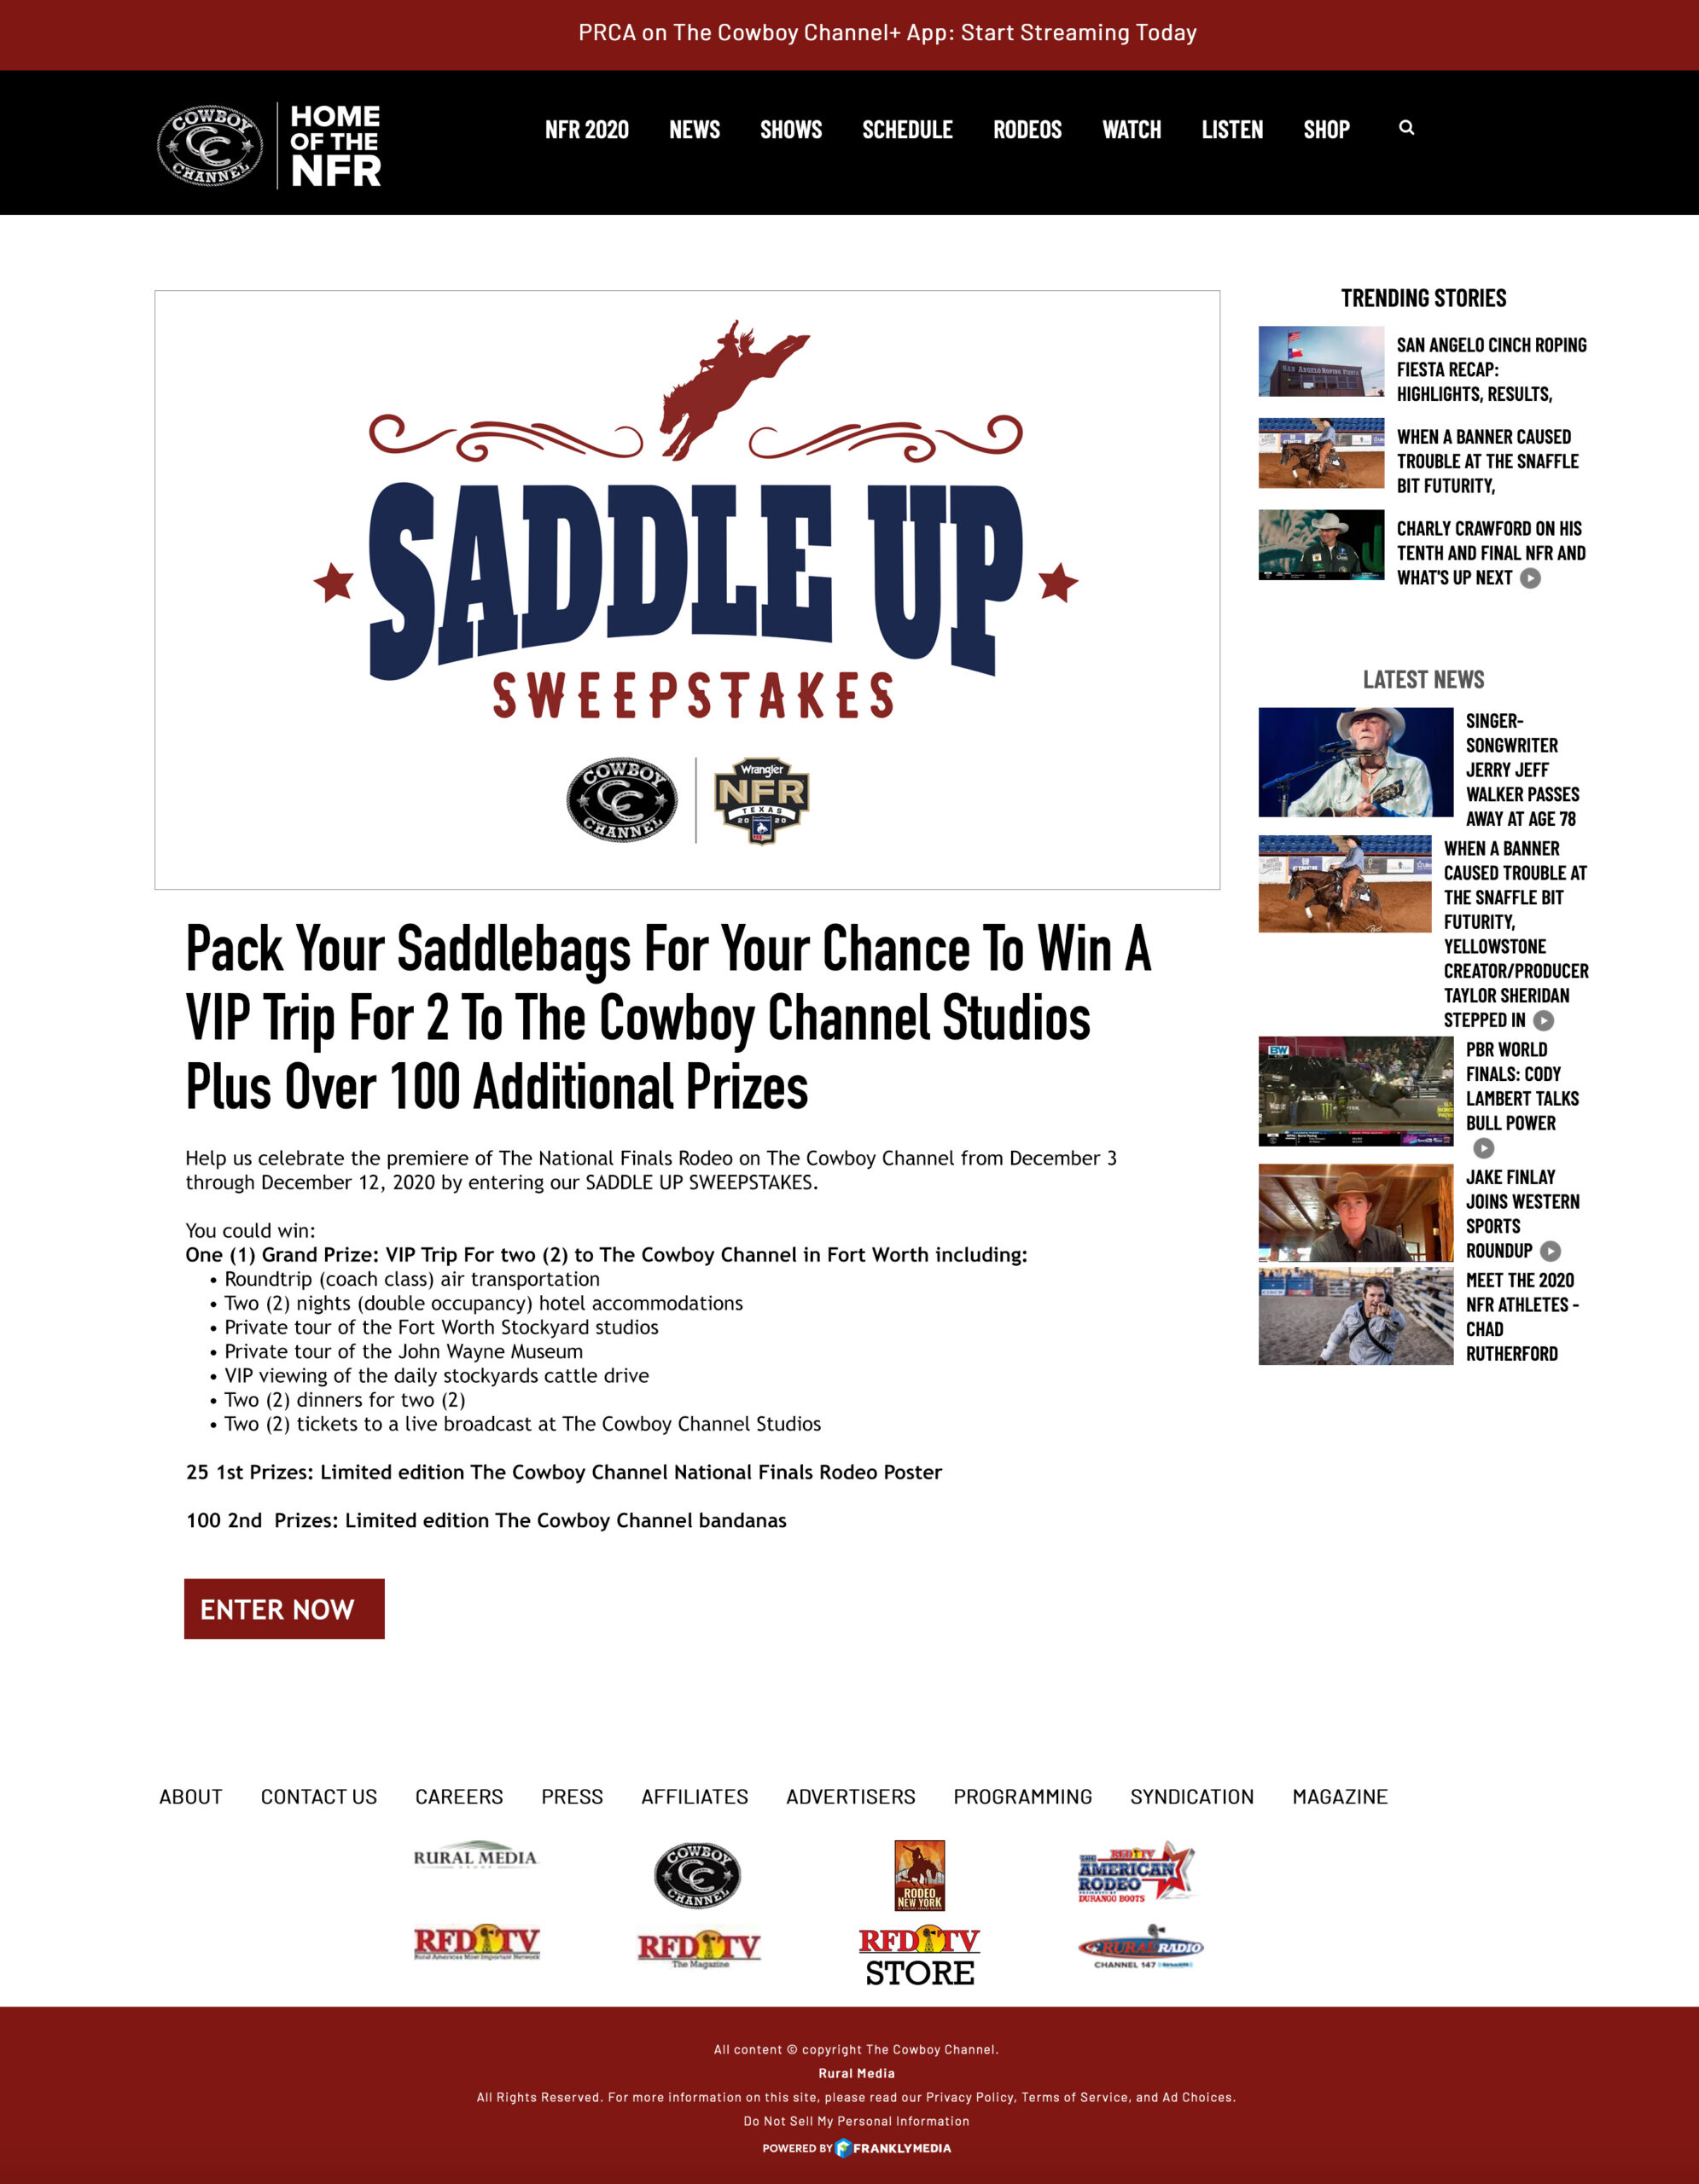 CC_SaddleUp_webpage_3